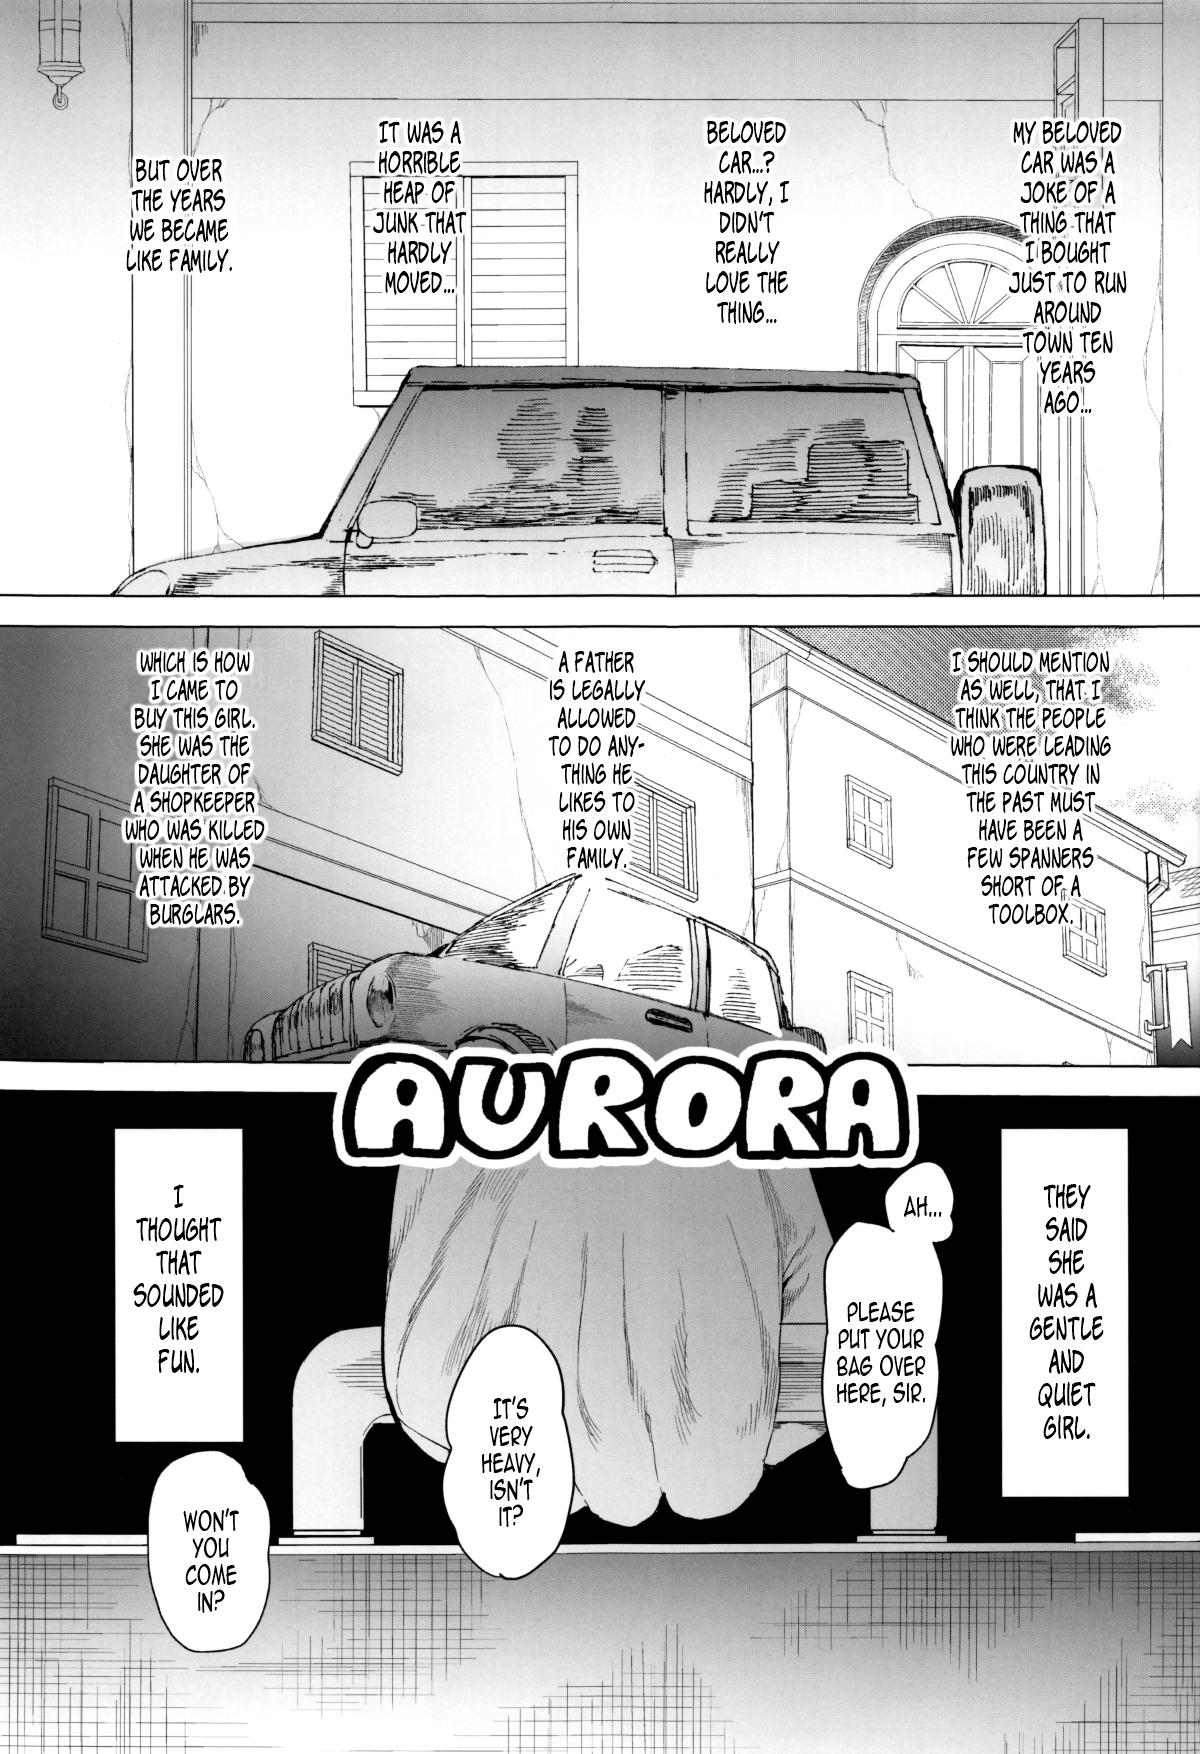 Head AURORA Babysitter - Page 2